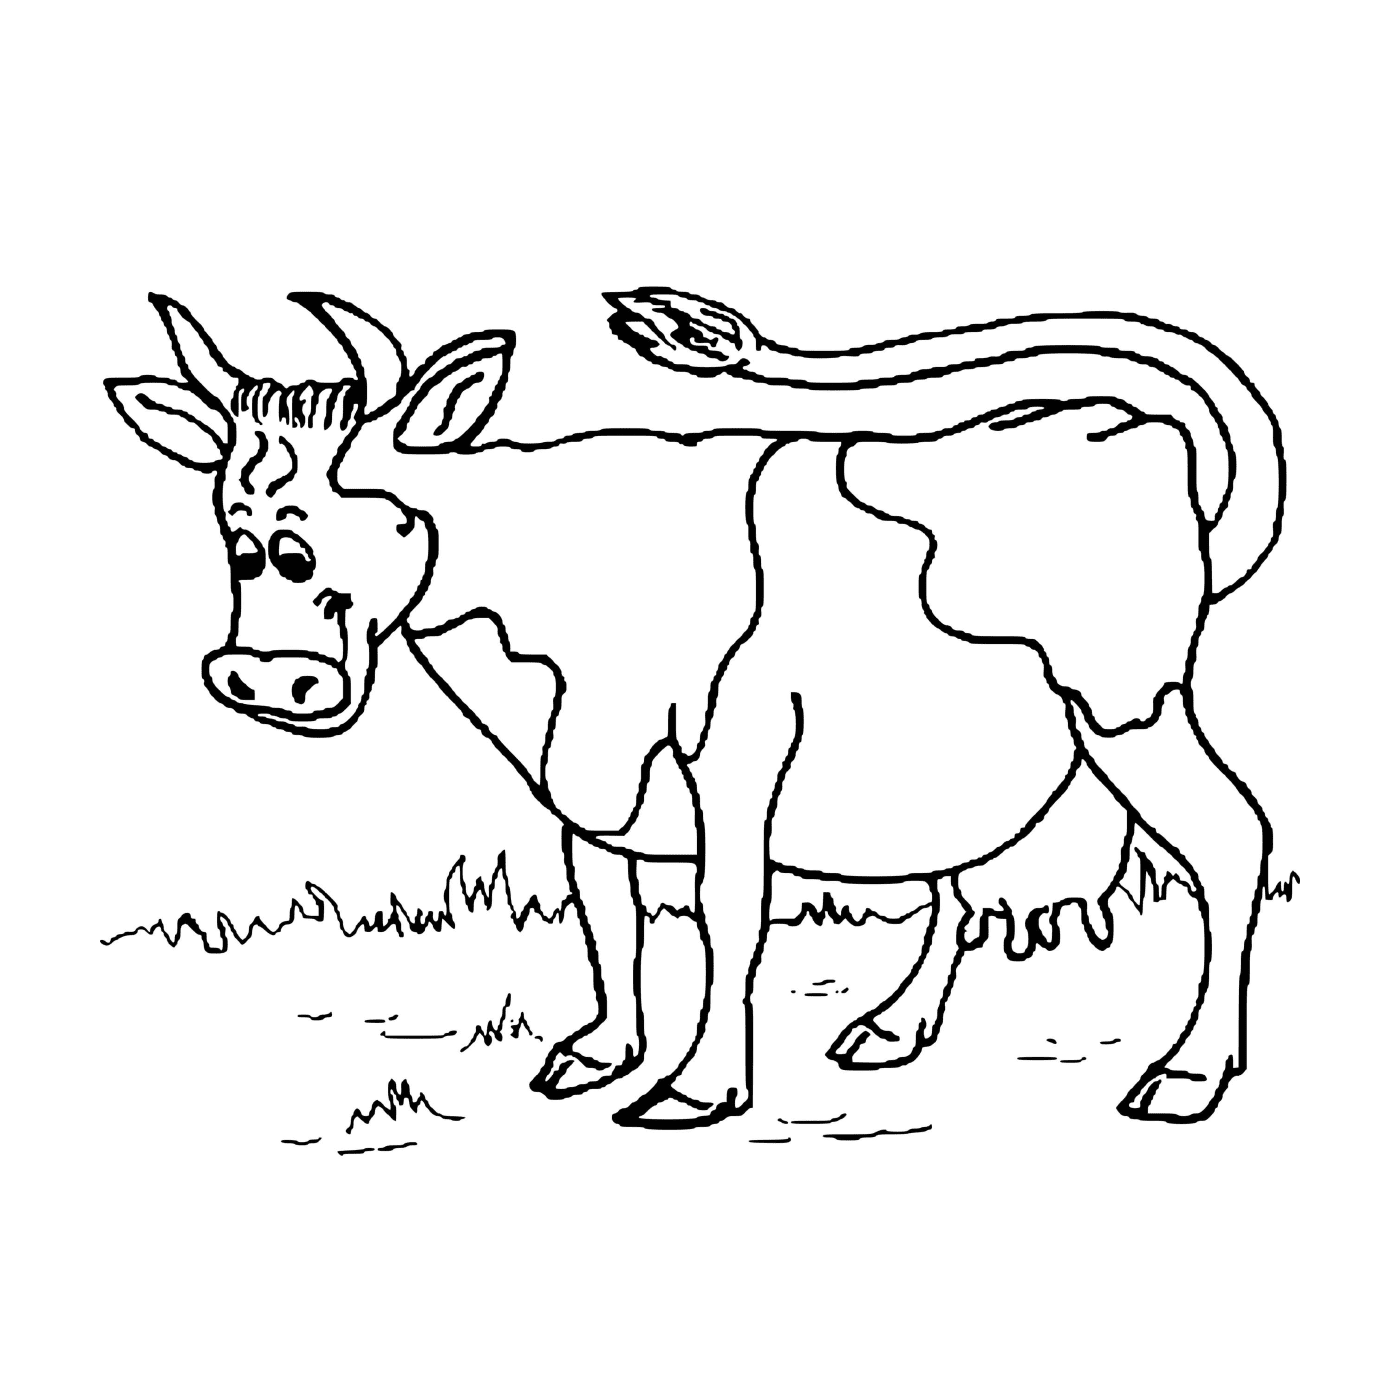   Vache joyeuse dans une ferme 